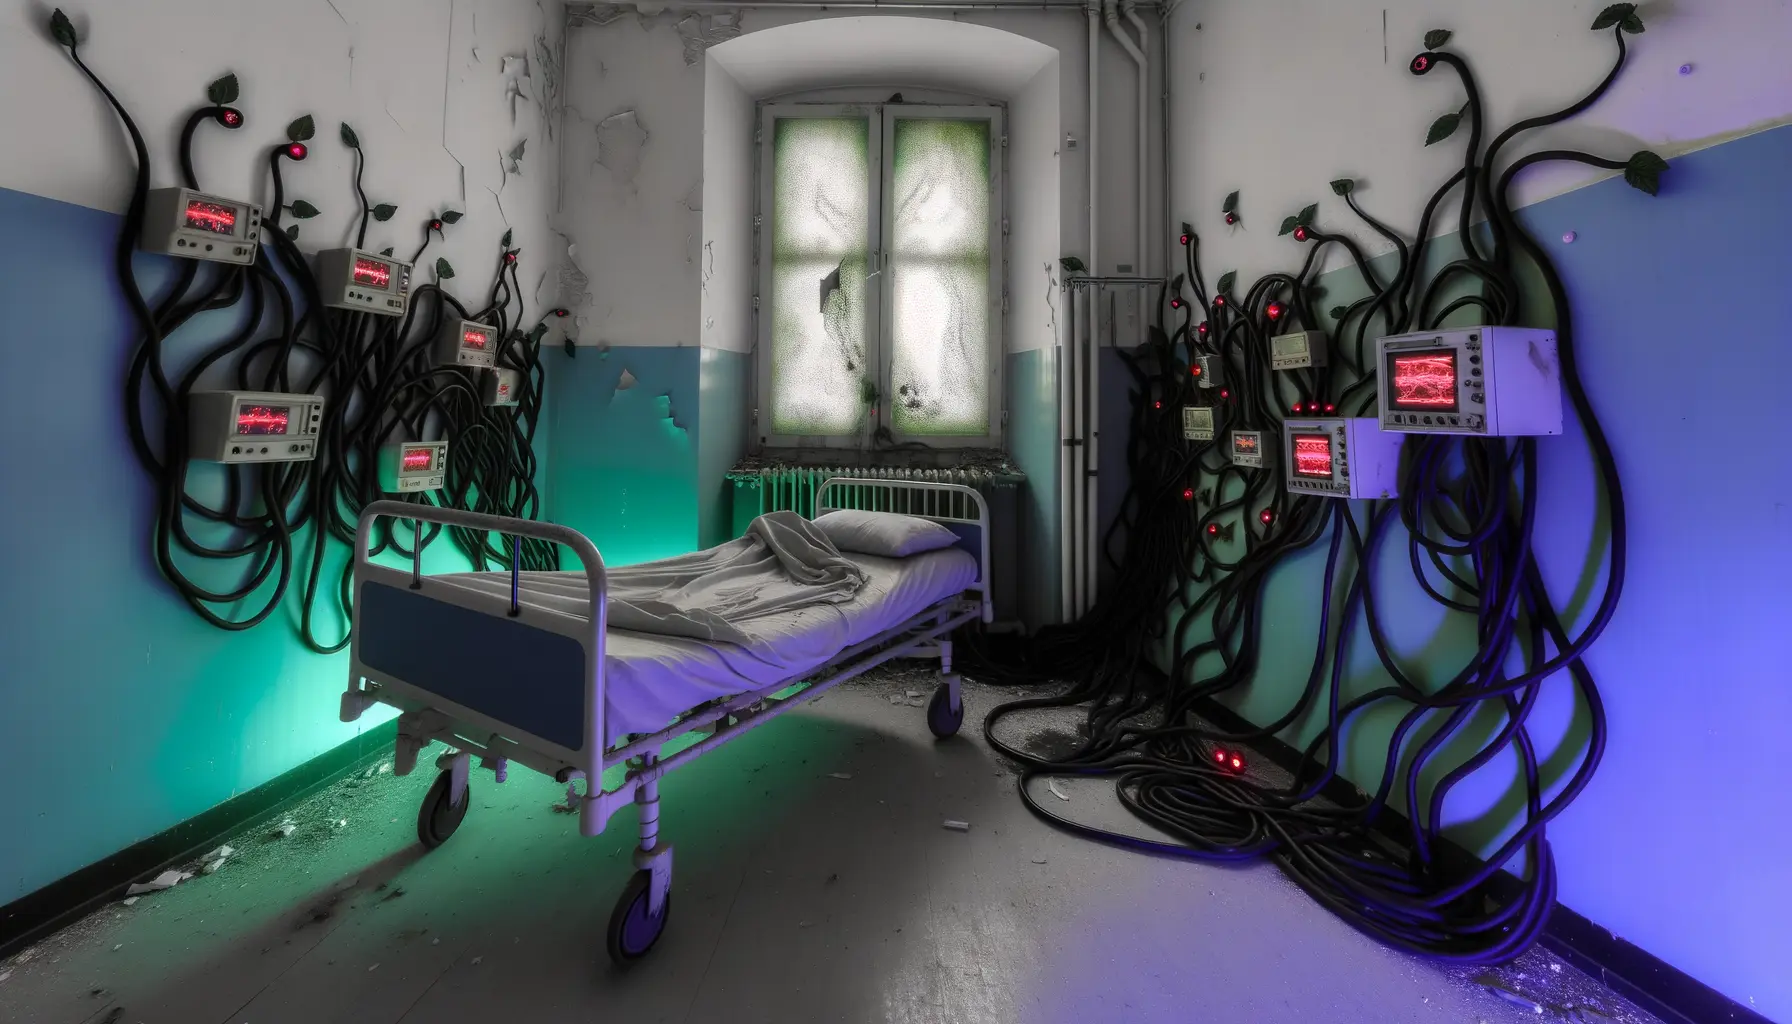 Symbolbild für Cyberangriffe auf ein stillgelegtes Krankenhauszimmer